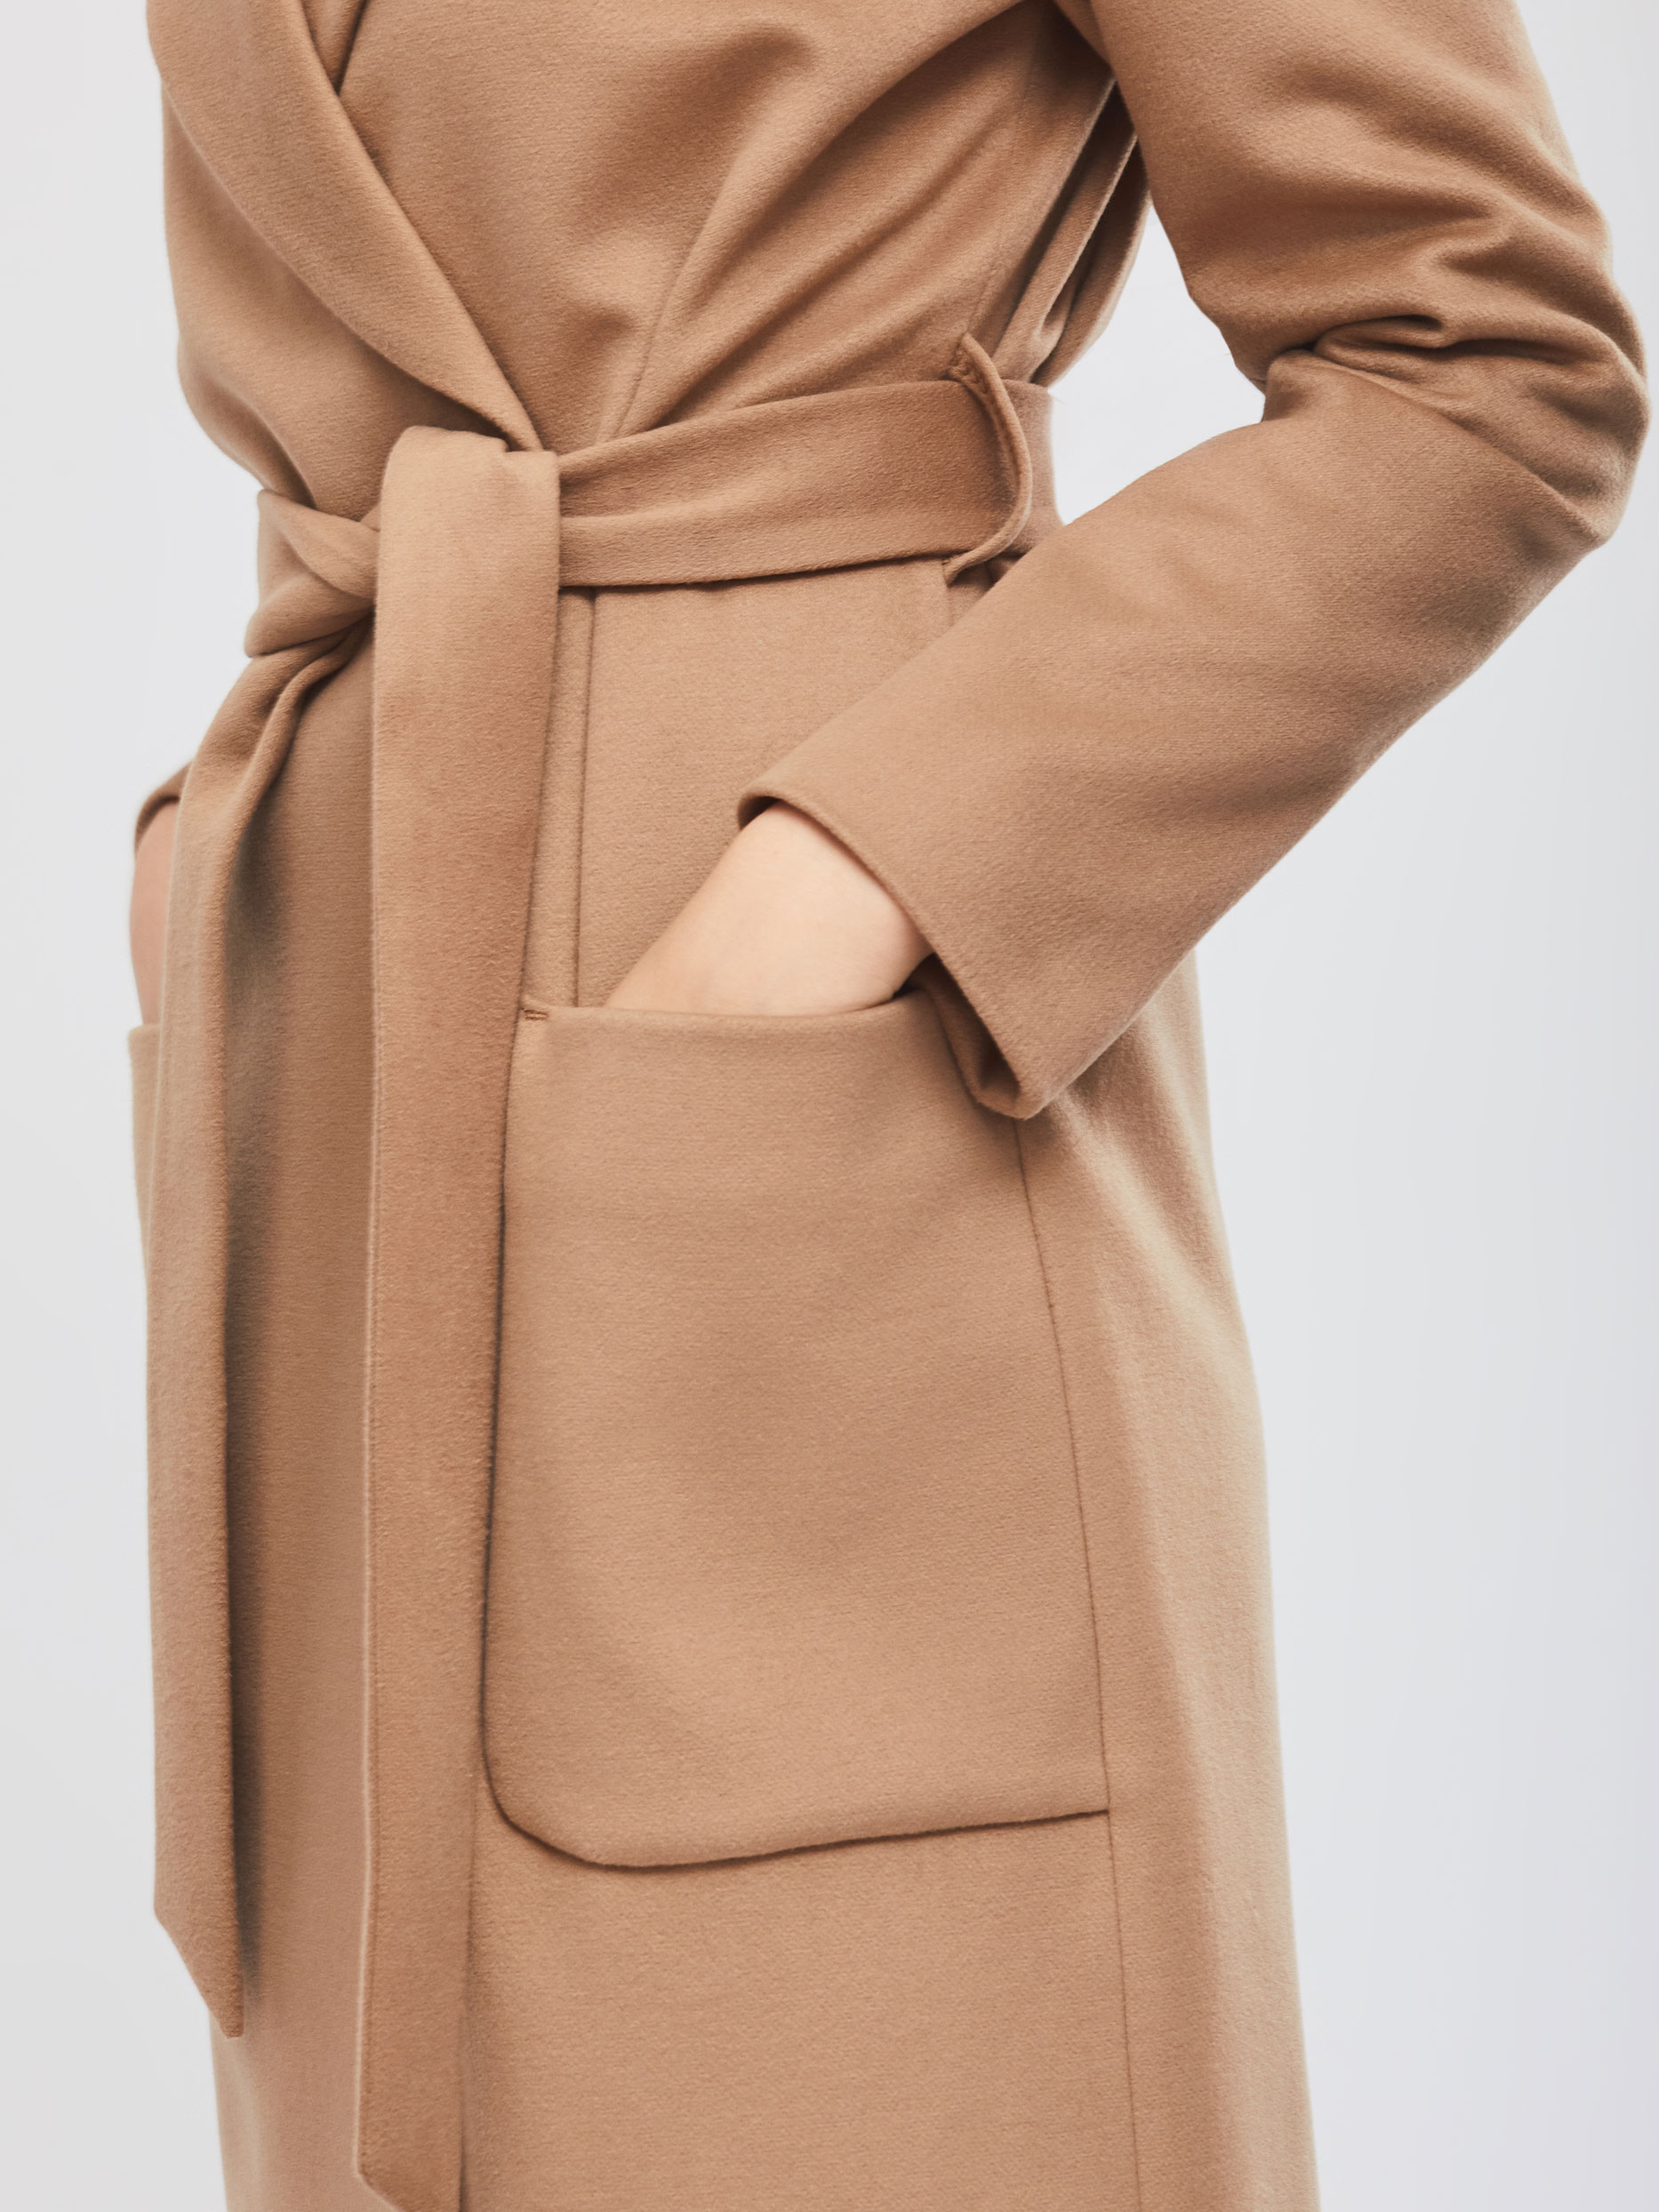 Женское пальто цвета кэмел